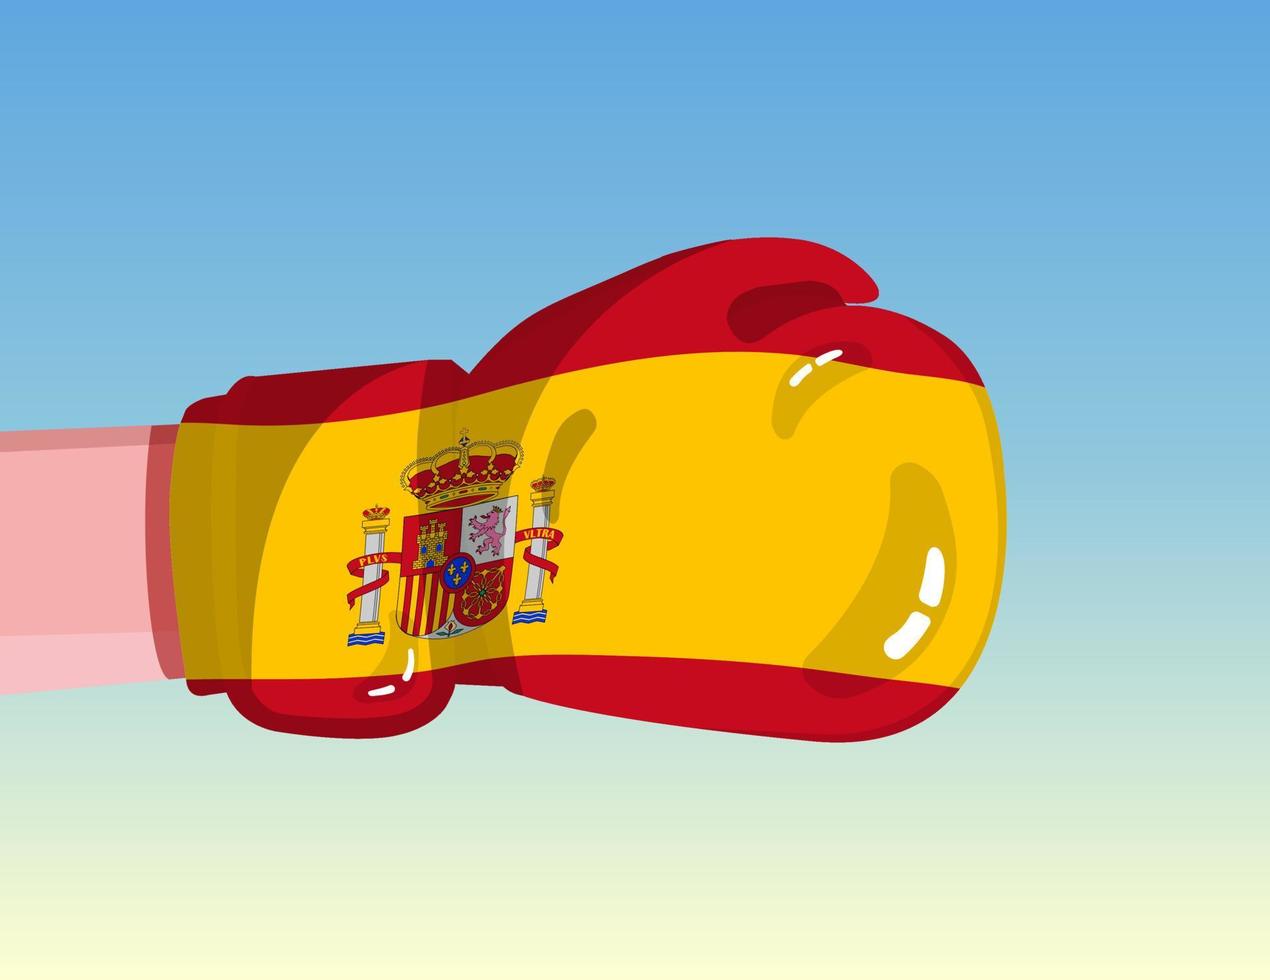 Spaniens flagga på boxningshandske. konfrontation mellan länder med konkurrenskraft. kränkande attityd. maktdelning. mall redo design. vektor